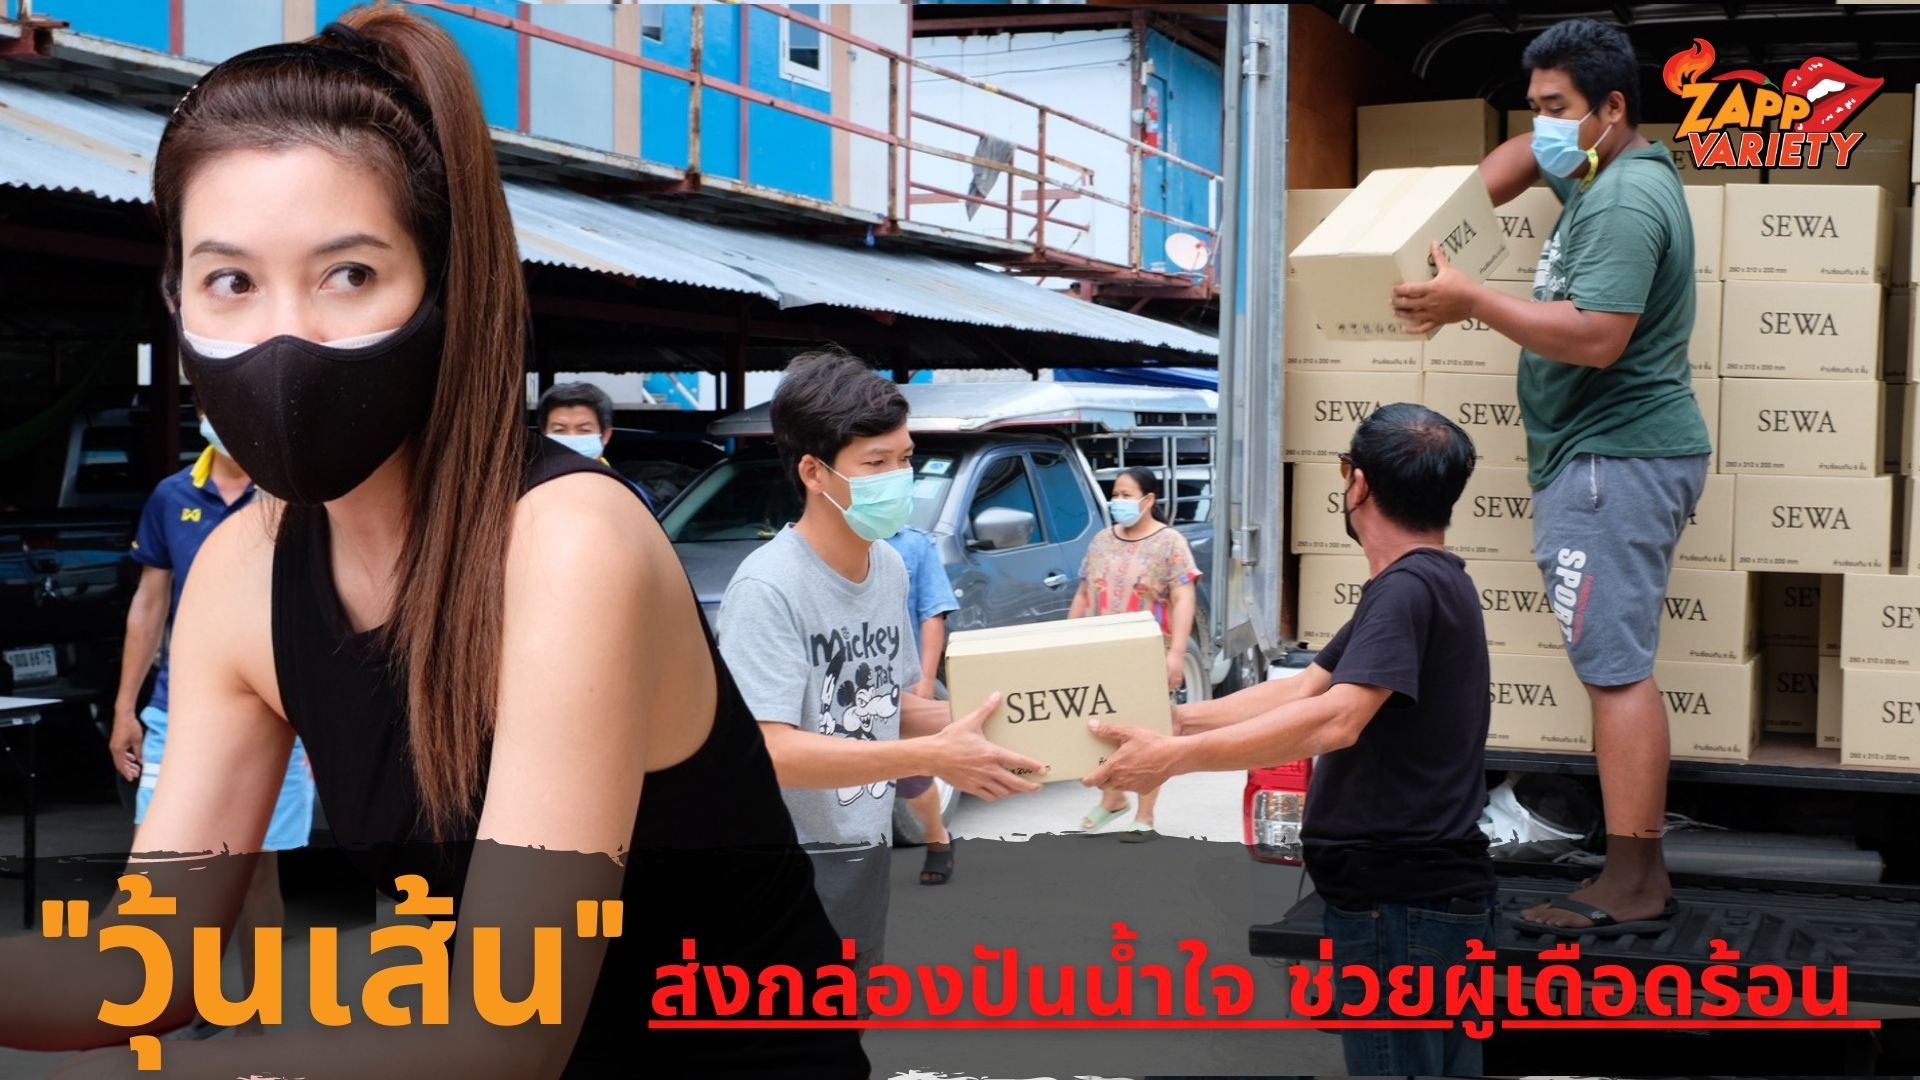 น้ำใจคนบันเทิง “วุ้นเส้น” ส่งต่อ “กล่องปันน้ำใจ” สร้างรอยยิ้มให้คนไทยฝ่าวิกฤติโควิด-19 